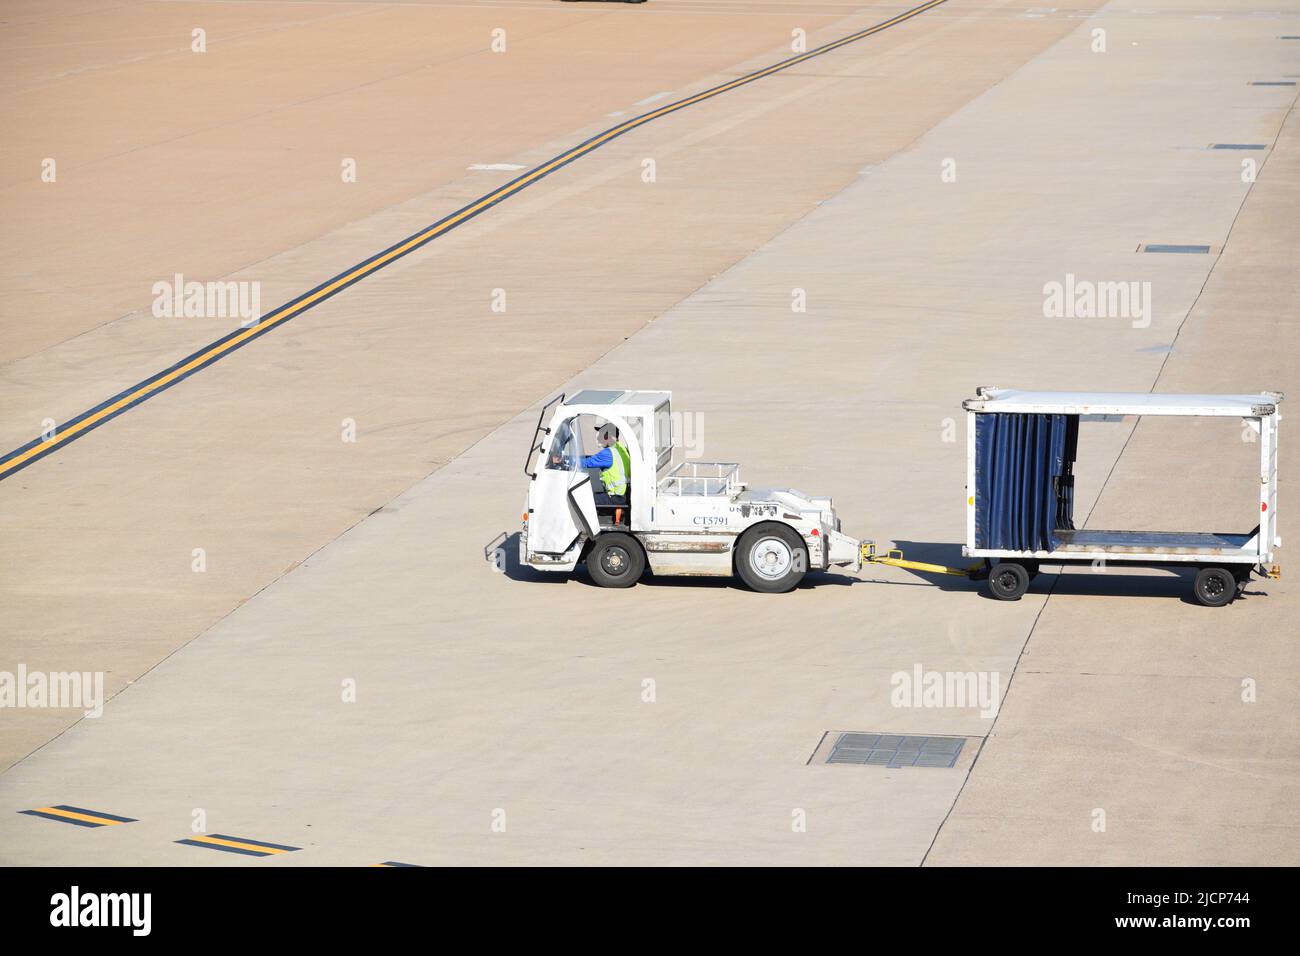 Ein Mitarbeiter von United Airlines, der einen Traktor fährt und einen leeren Gepäckwagen am Dallas Fort Worth International Airport (DFW Airport) zieht Stockfoto